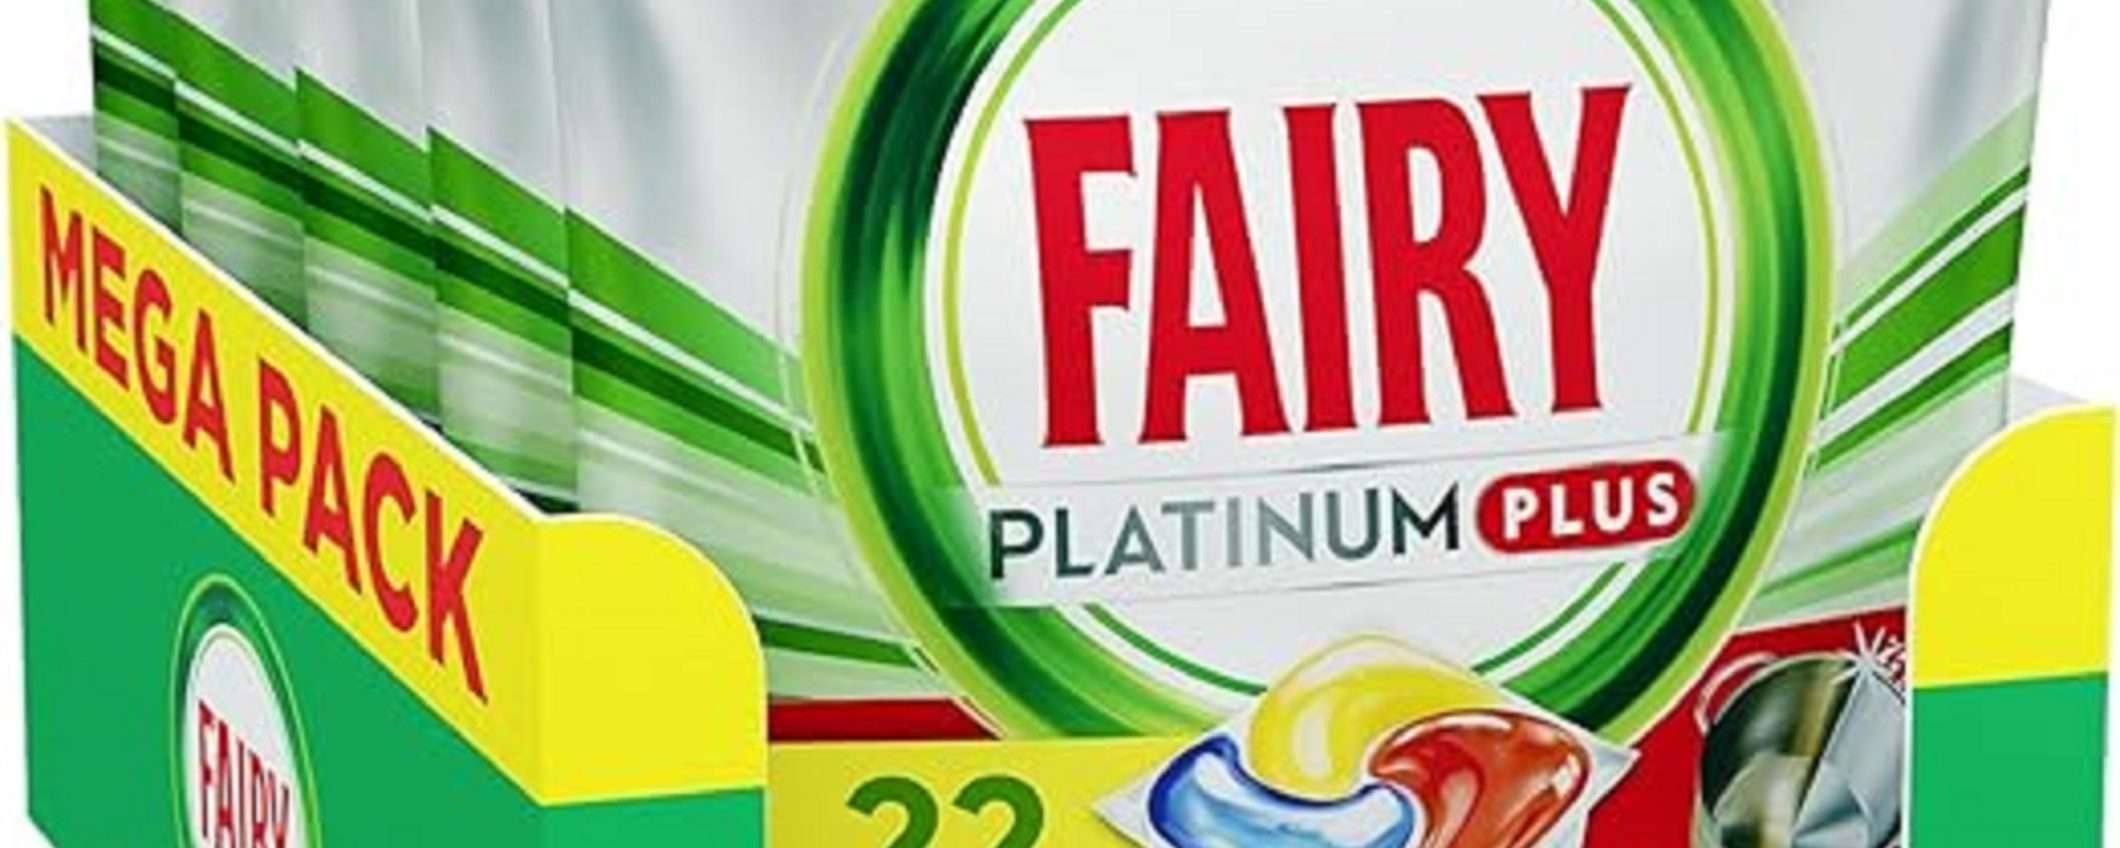 Fairy Platinum 110 capsule per lavastoviglie: prezzo BOMBA su Amazon!